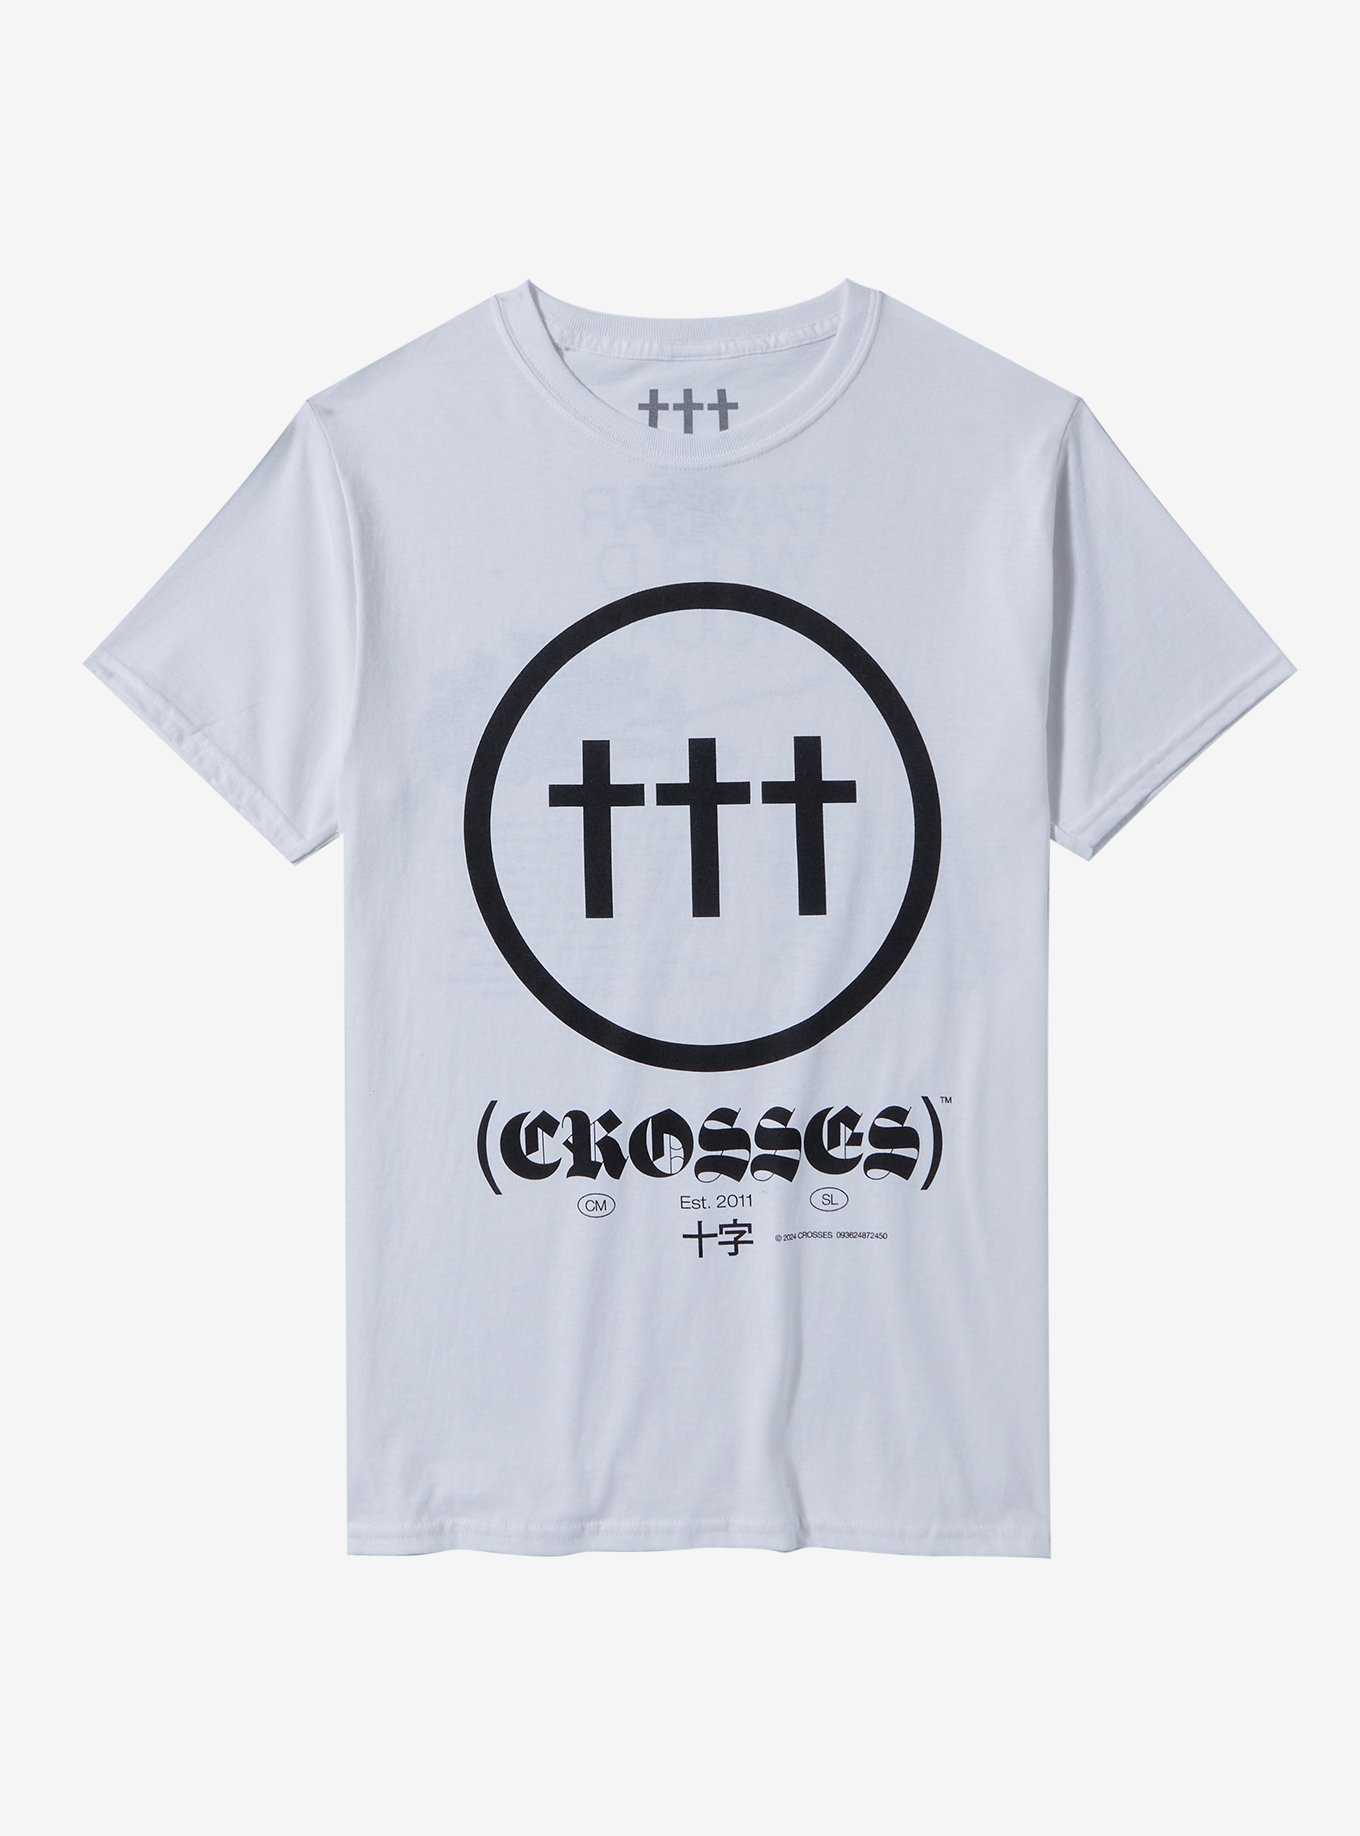 Crosses Logo Tour Boyfriend Fit Girls T-Shirt, , hi-res